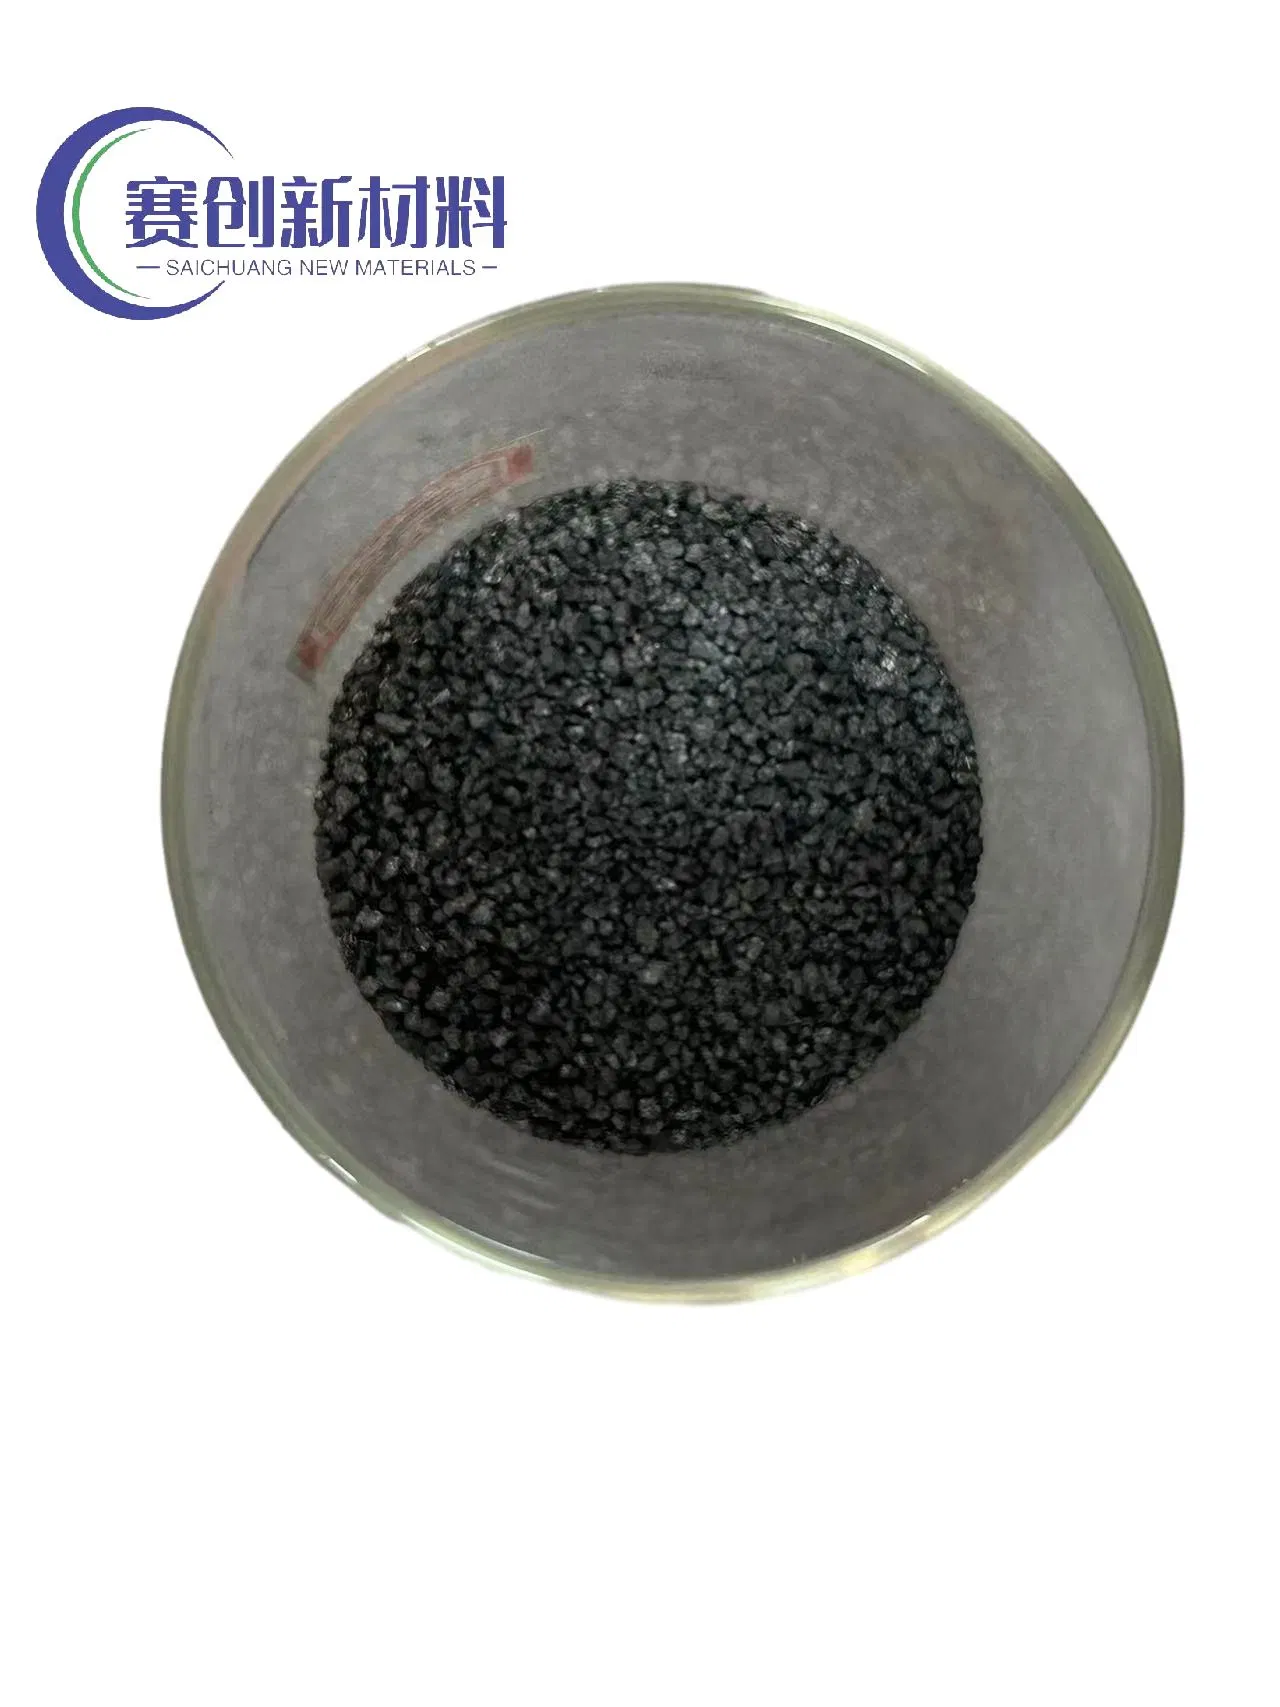 Из Saichuang 2-5mm оптовые цены graphitized Petroleum Coke 99.5 Carbon Carburizer / Carbon Additive (Карбюризер для изюма GPC)